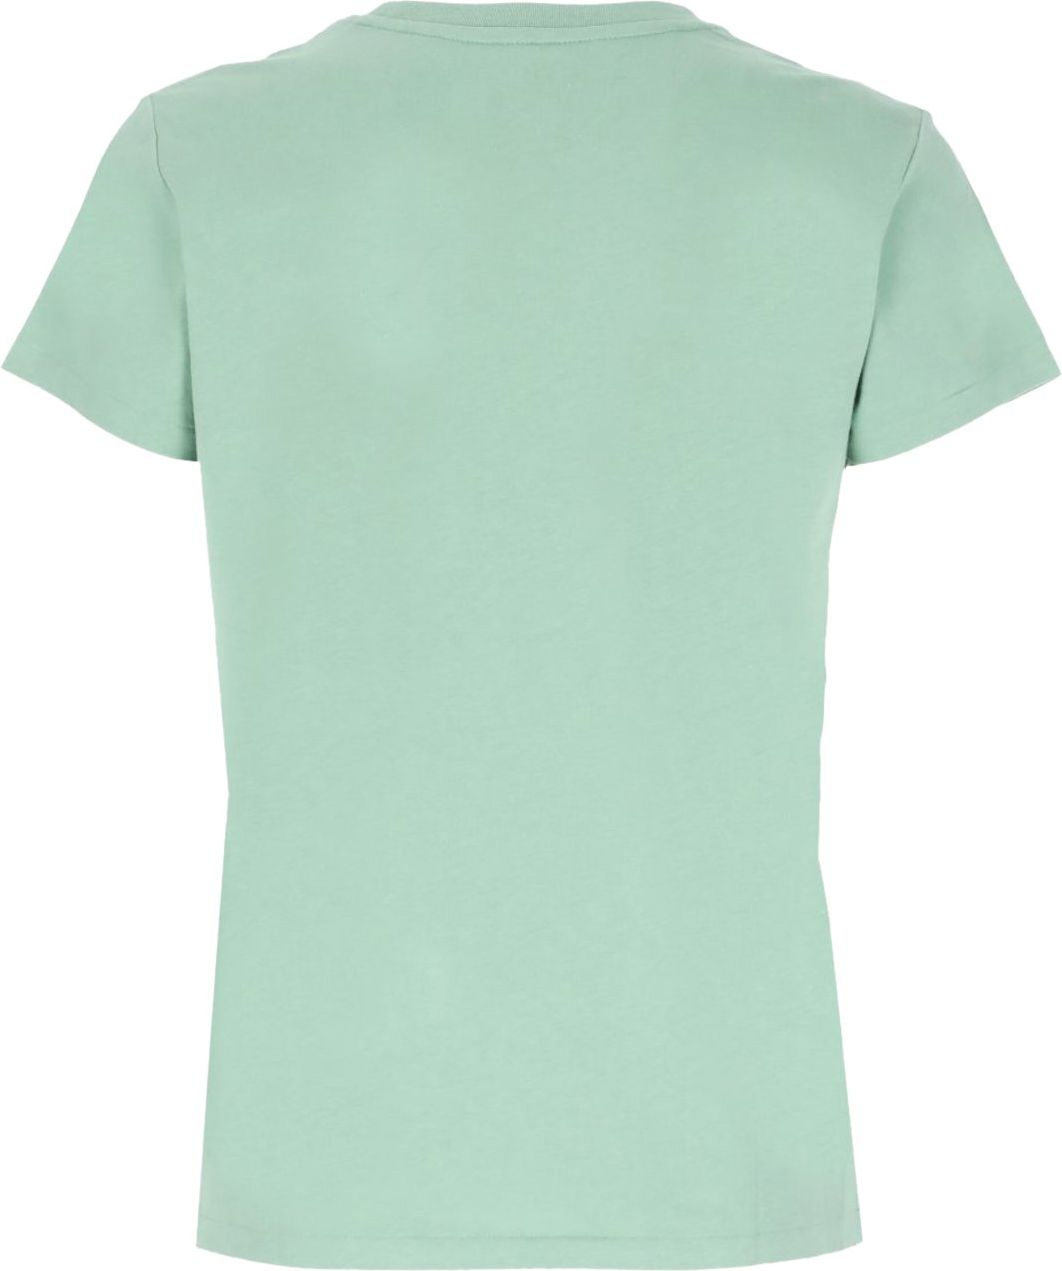 Ralph Lauren T-shirt Groen Groen